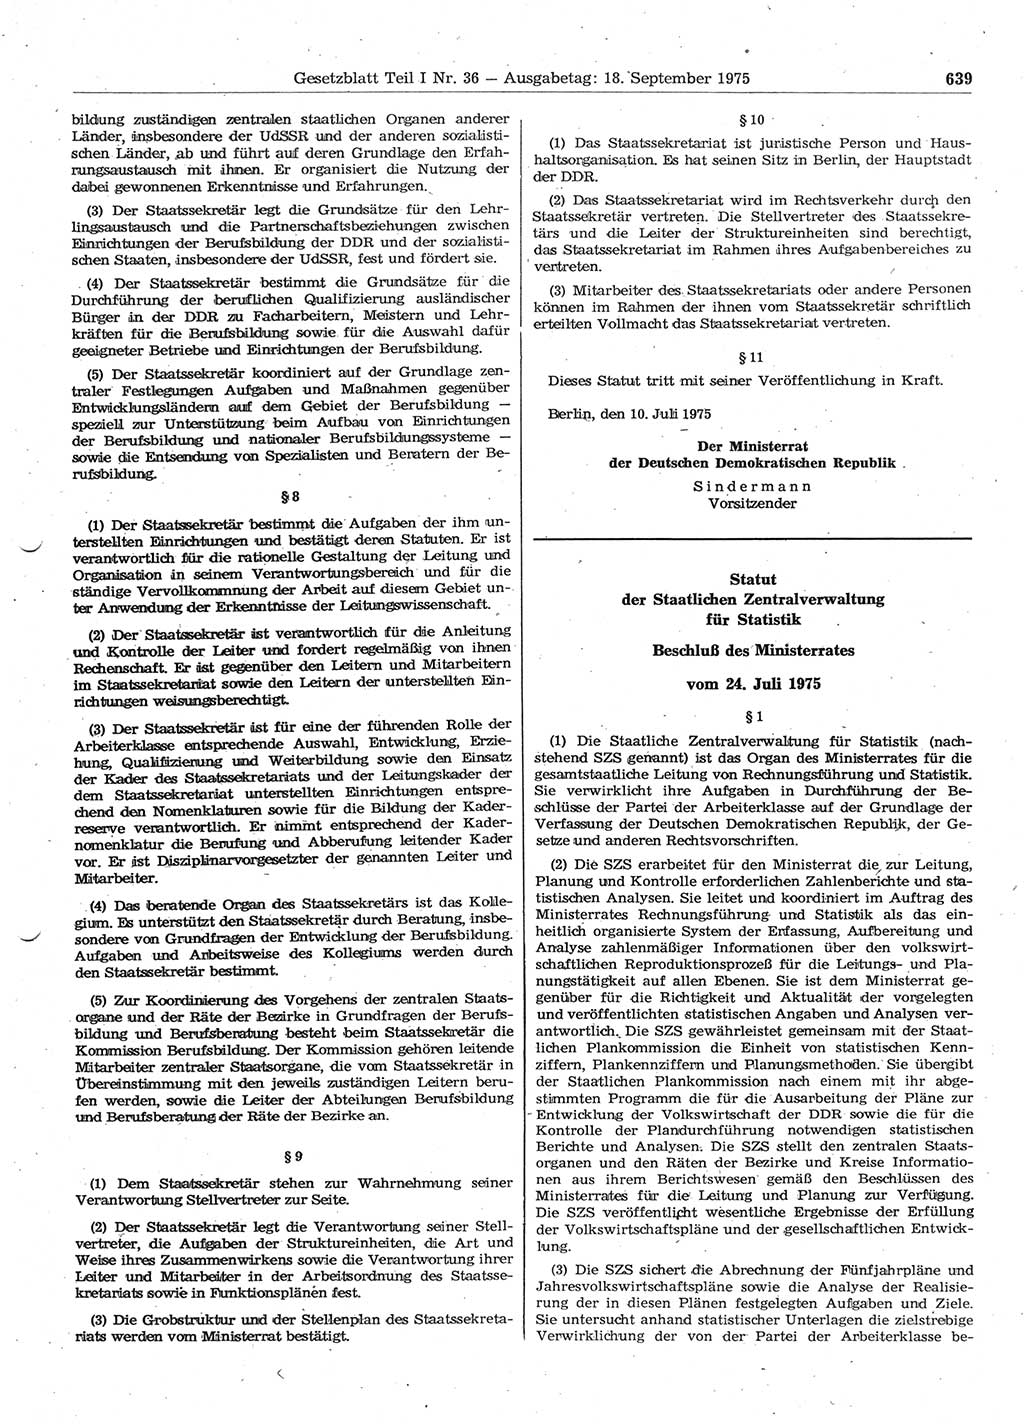 Gesetzblatt (GBl.) der Deutschen Demokratischen Republik (DDR) Teil Ⅰ 1975, Seite 639 (GBl. DDR Ⅰ 1975, S. 639)